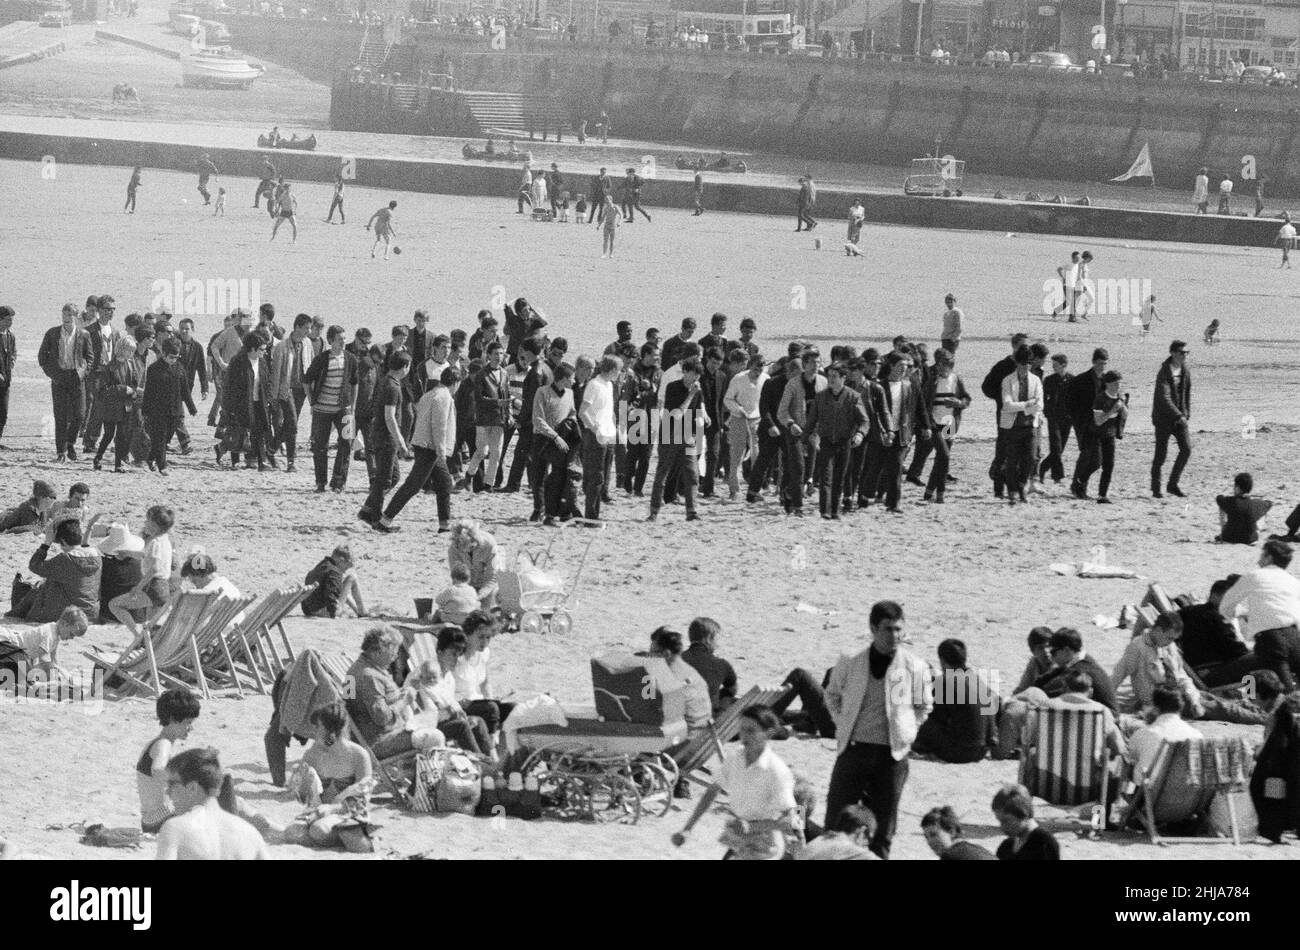 Mods gegen Rockers. Bild zeigt die Szene in Margate, North East Kent im Mai 1964. Mods am Strand sammeln sich in Kraft. Bild aufgenommen am 17th. Mai 1964 Stockfoto